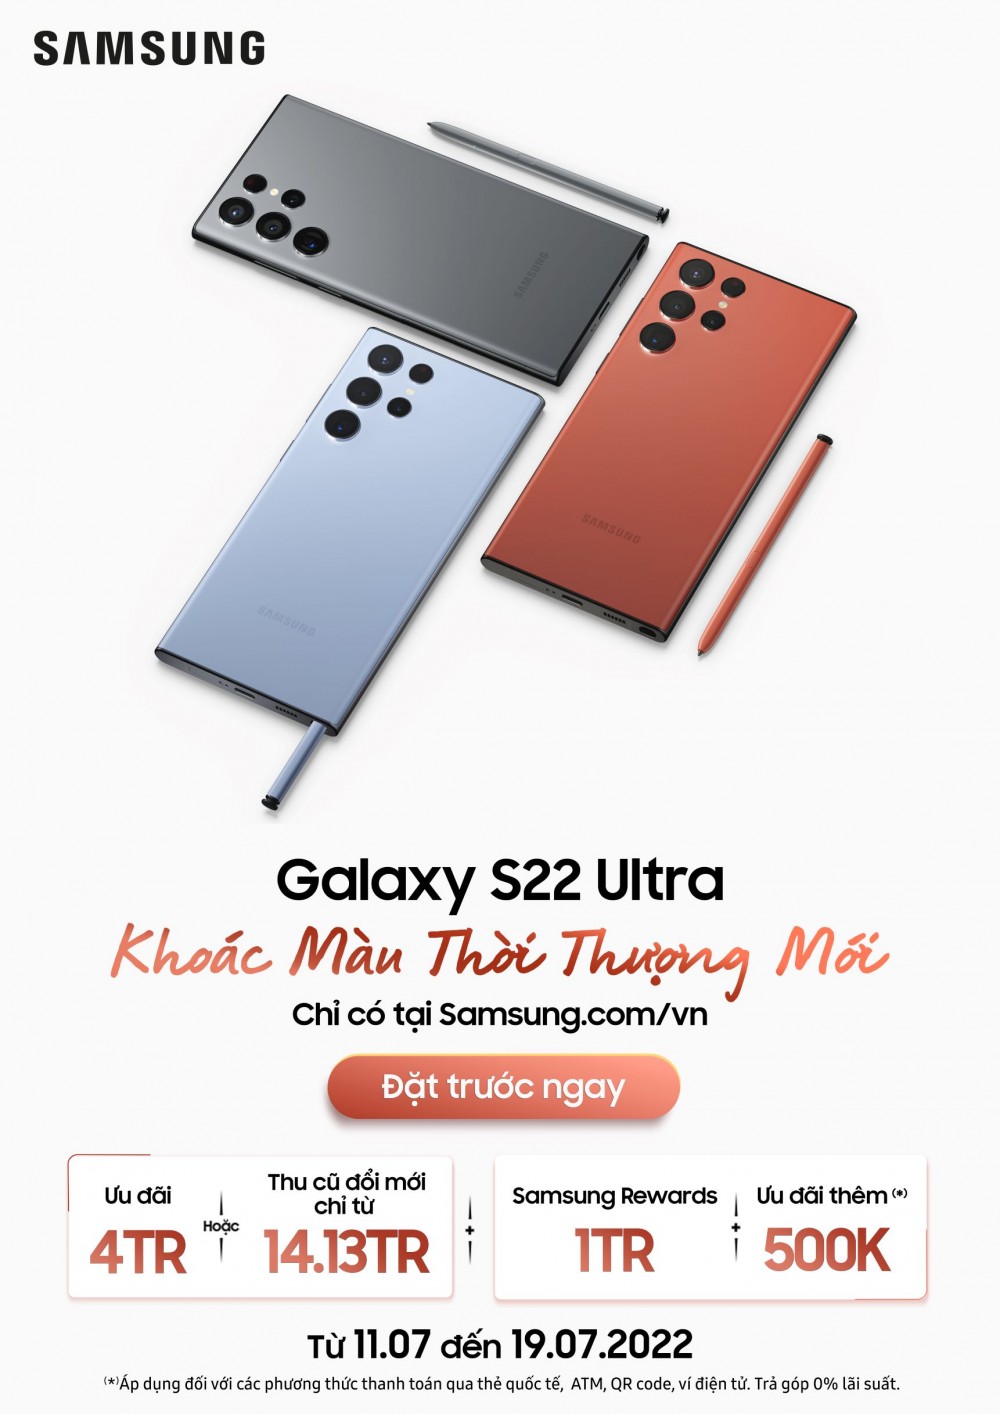 Galaxy S22 Ultra bổ sung gam màu mới